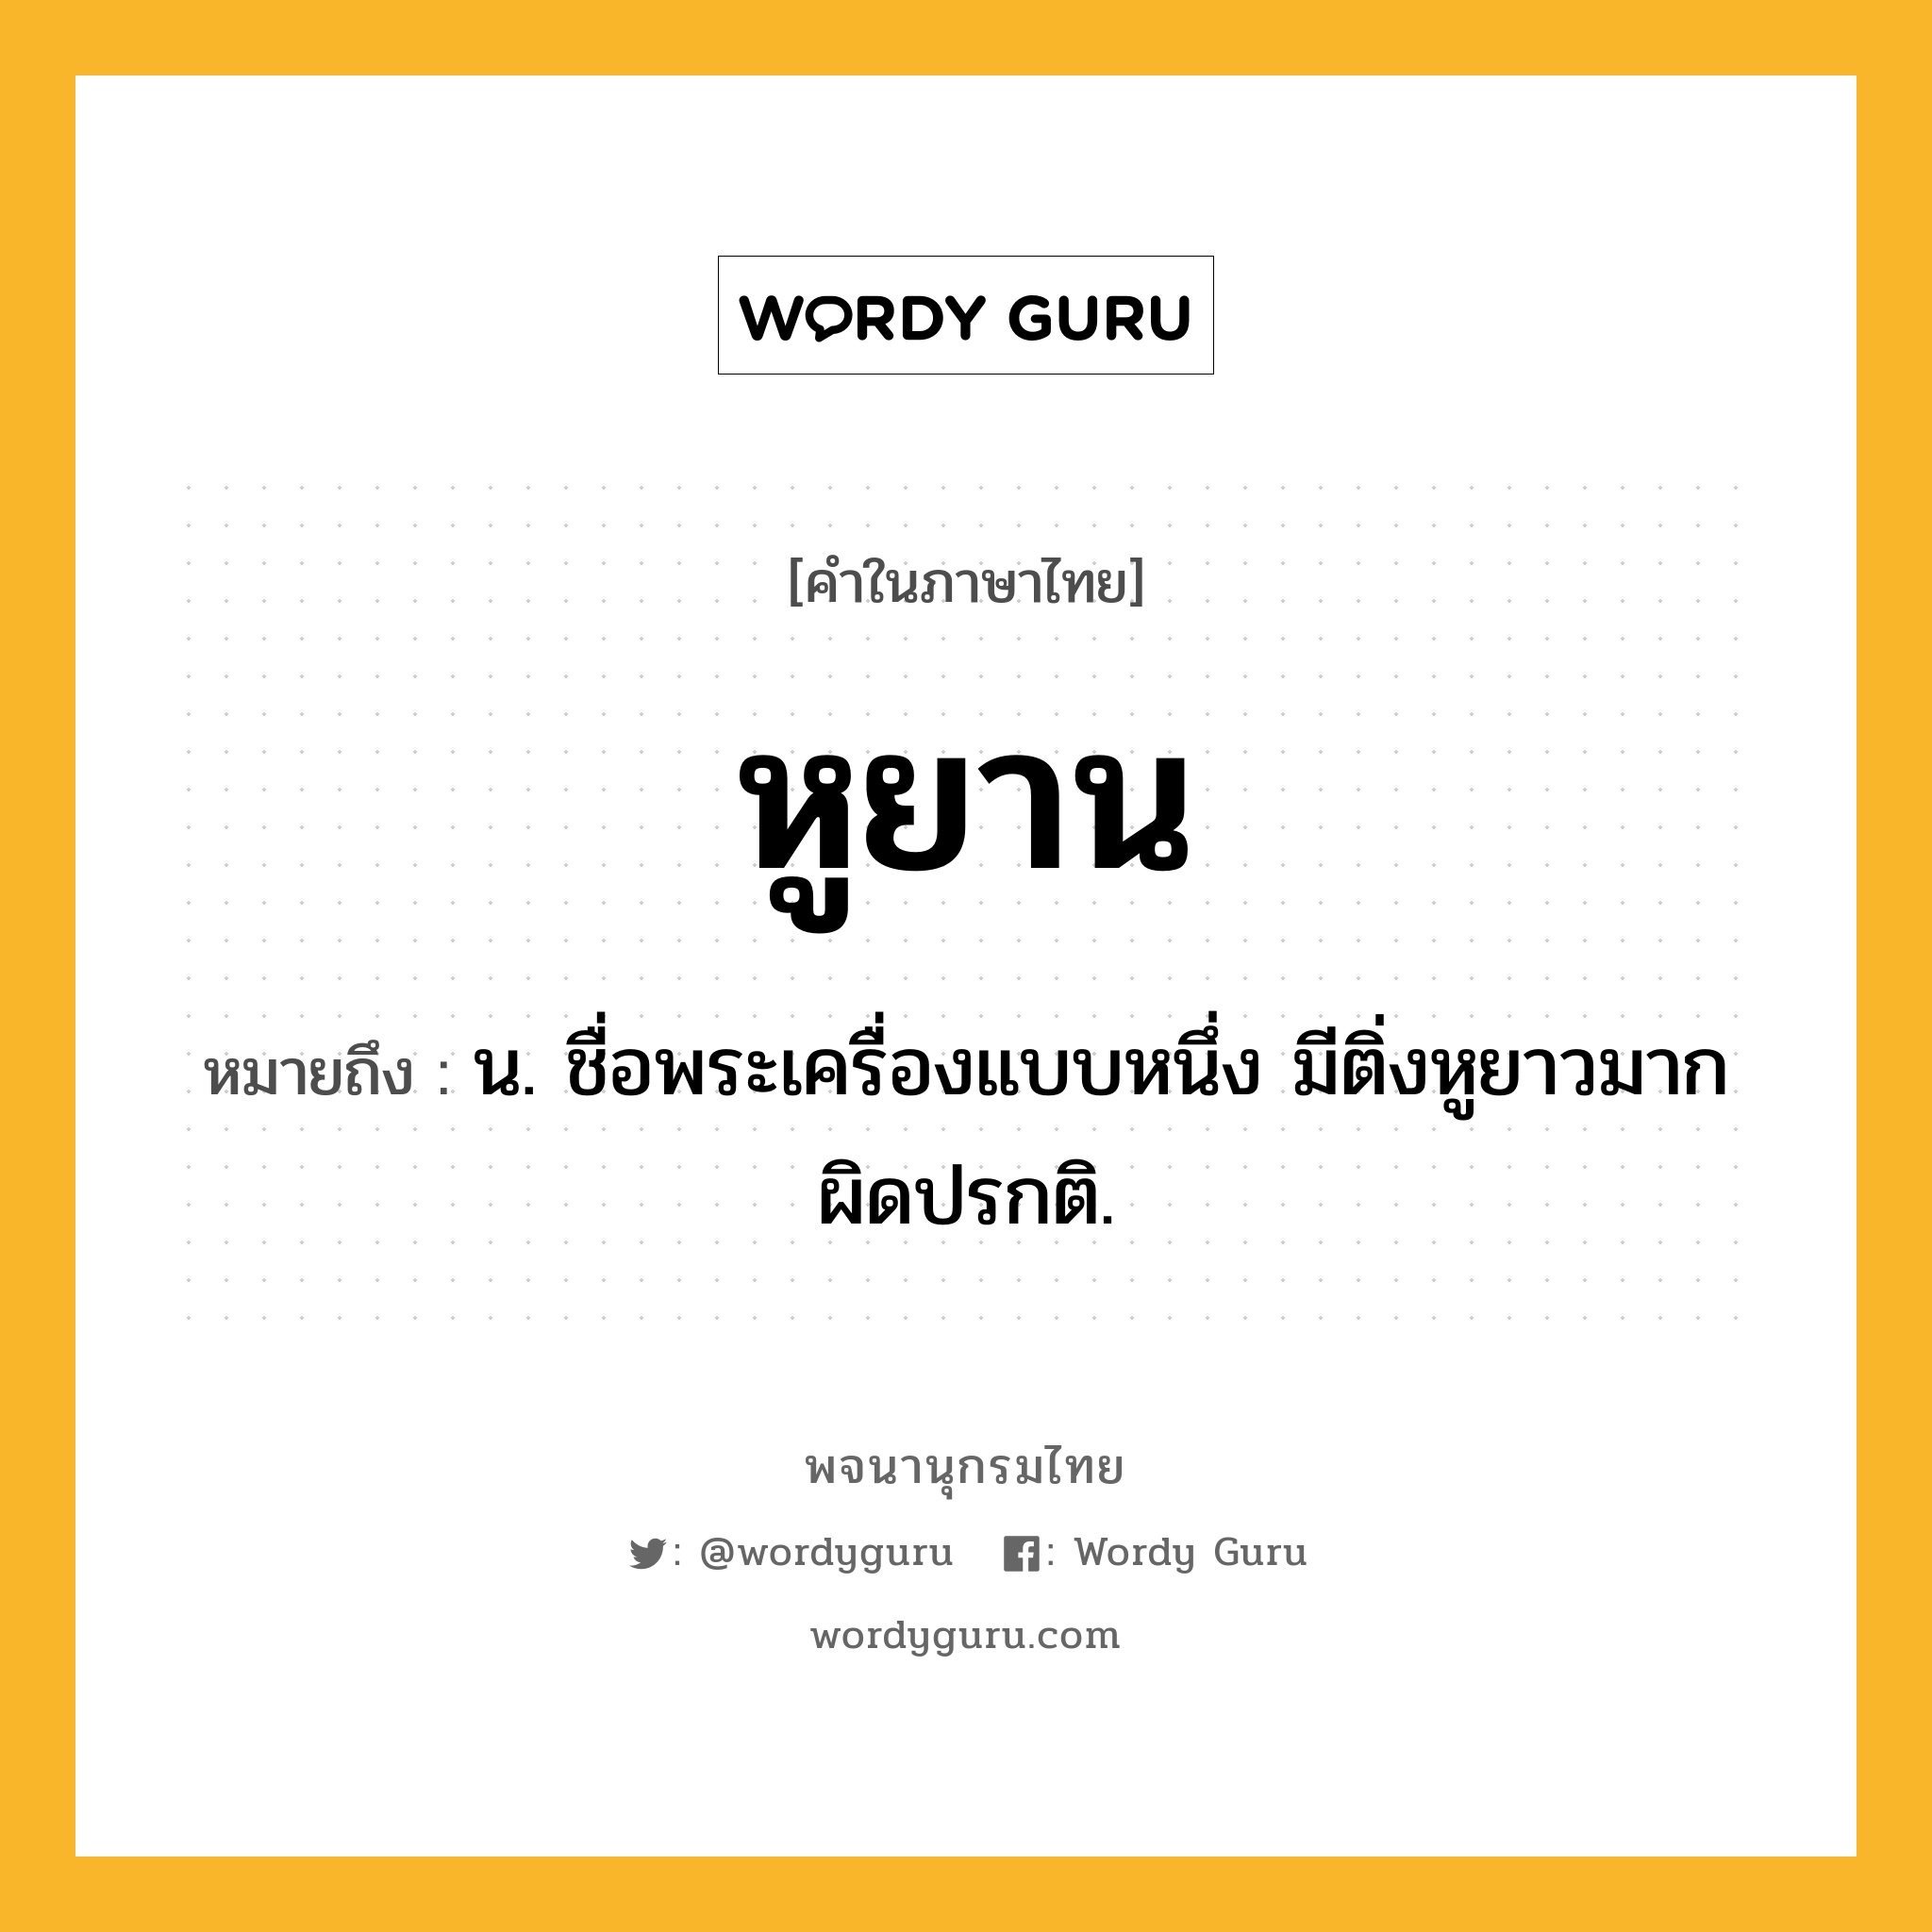 หูยาน หมายถึงอะไร?, คำในภาษาไทย หูยาน หมายถึง น. ชื่อพระเครื่องแบบหนึ่ง มีติ่งหูยาวมากผิดปรกติ.